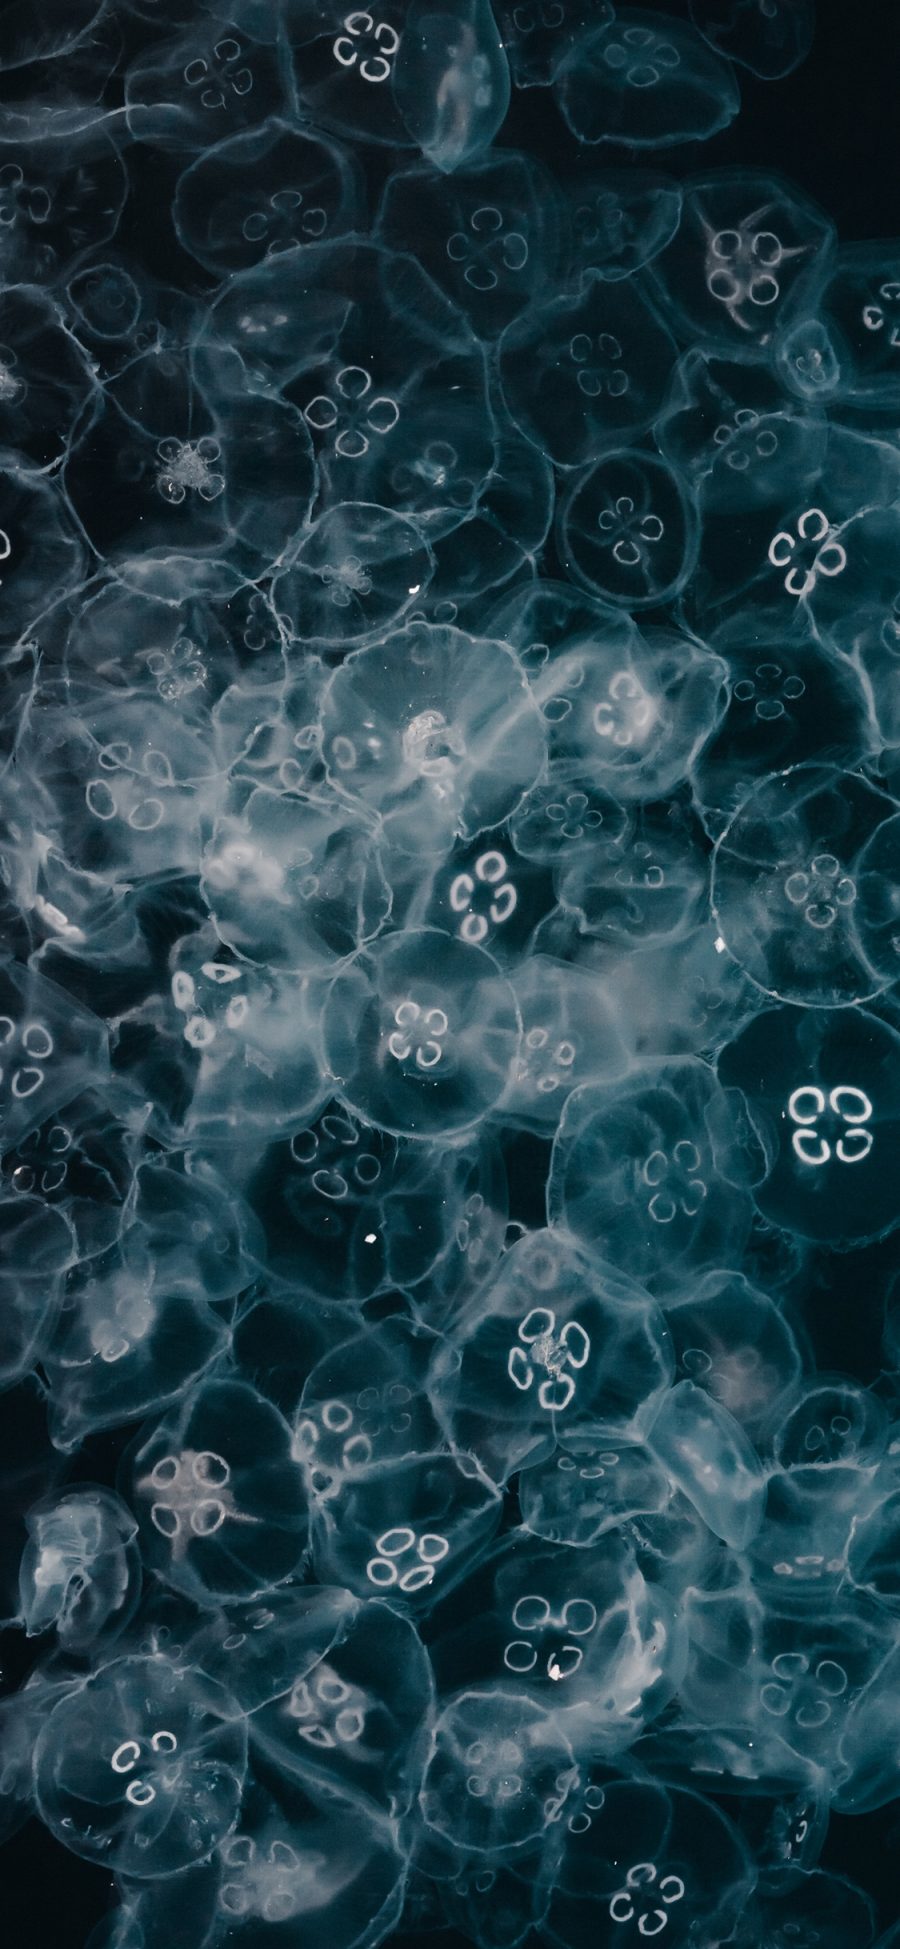 [2436×1125]水母 海洋生物 透明 密集 苹果手机壁纸图片